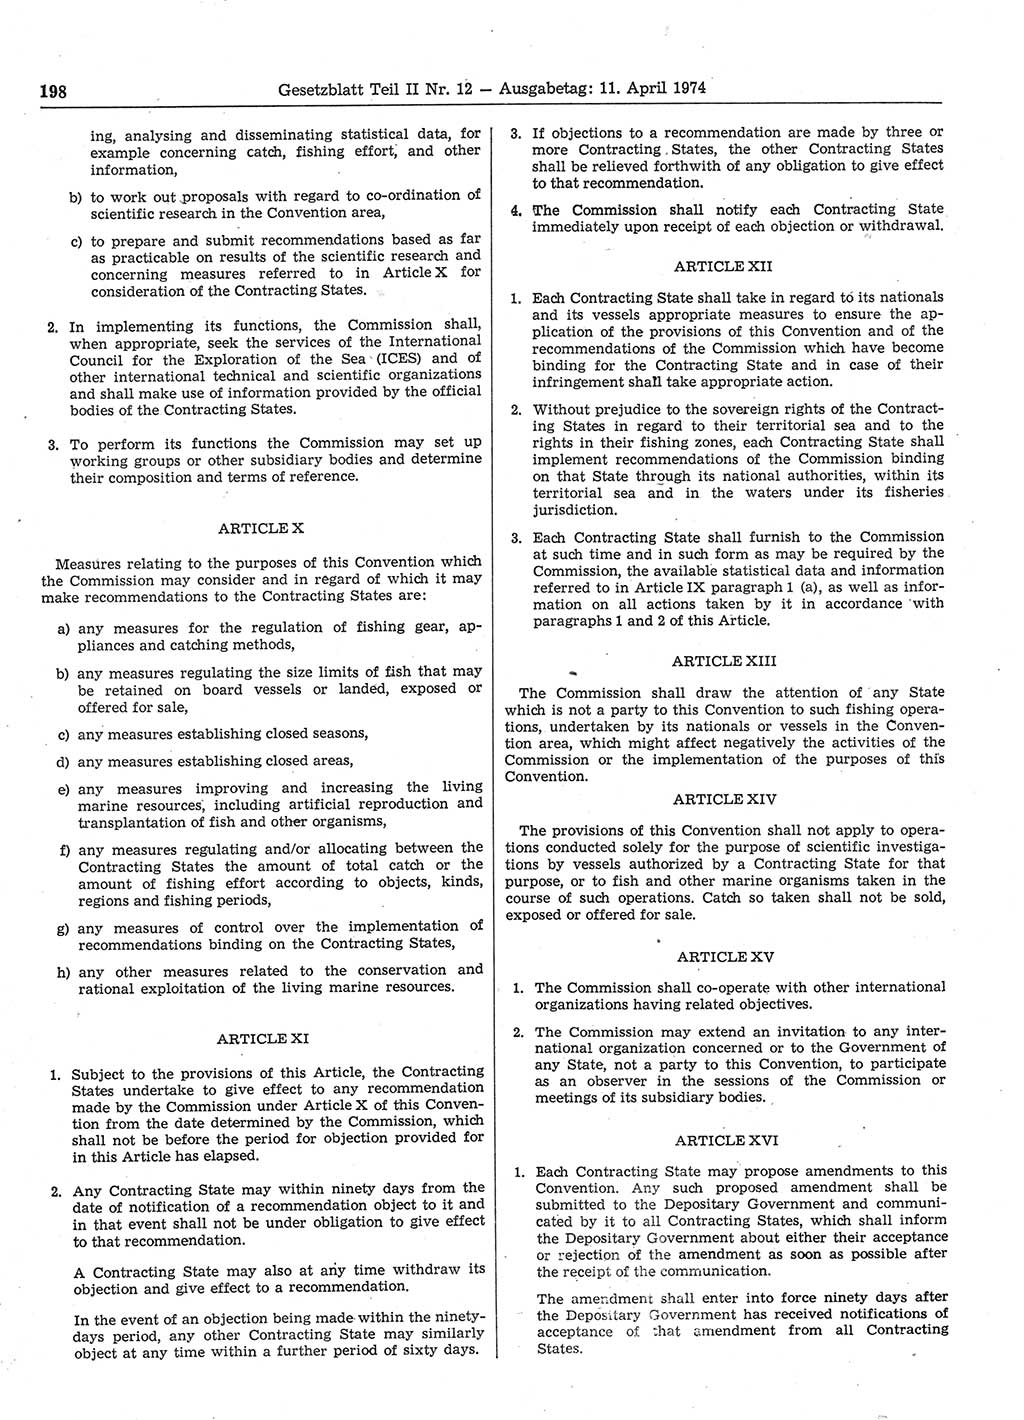 Gesetzblatt (GBl.) der Deutschen Demokratischen Republik (DDR) Teil ⅠⅠ 1974, Seite 198 (GBl. DDR ⅠⅠ 1974, S. 198)